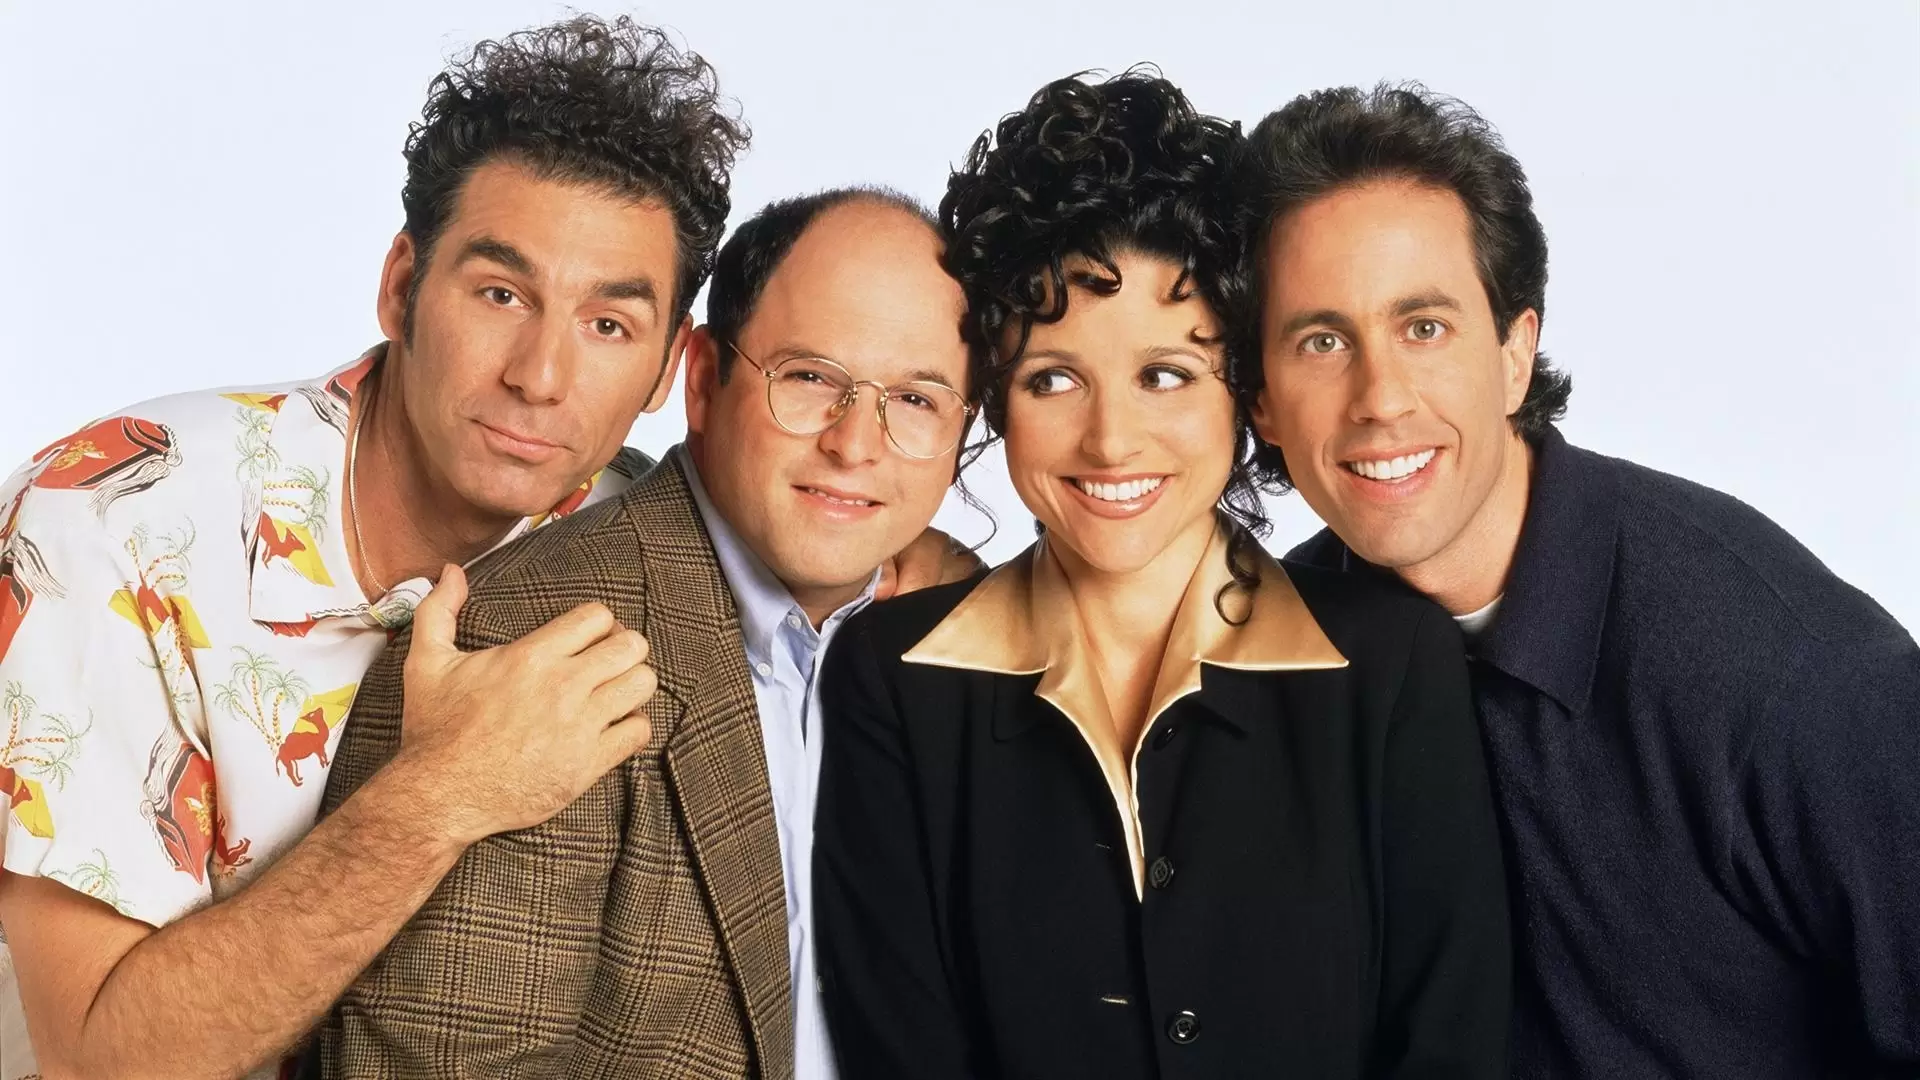 دانلود سریال Seinfeld 1989 (ساینفیلد) با زیرنویس فارسی و تماشای آنلاین